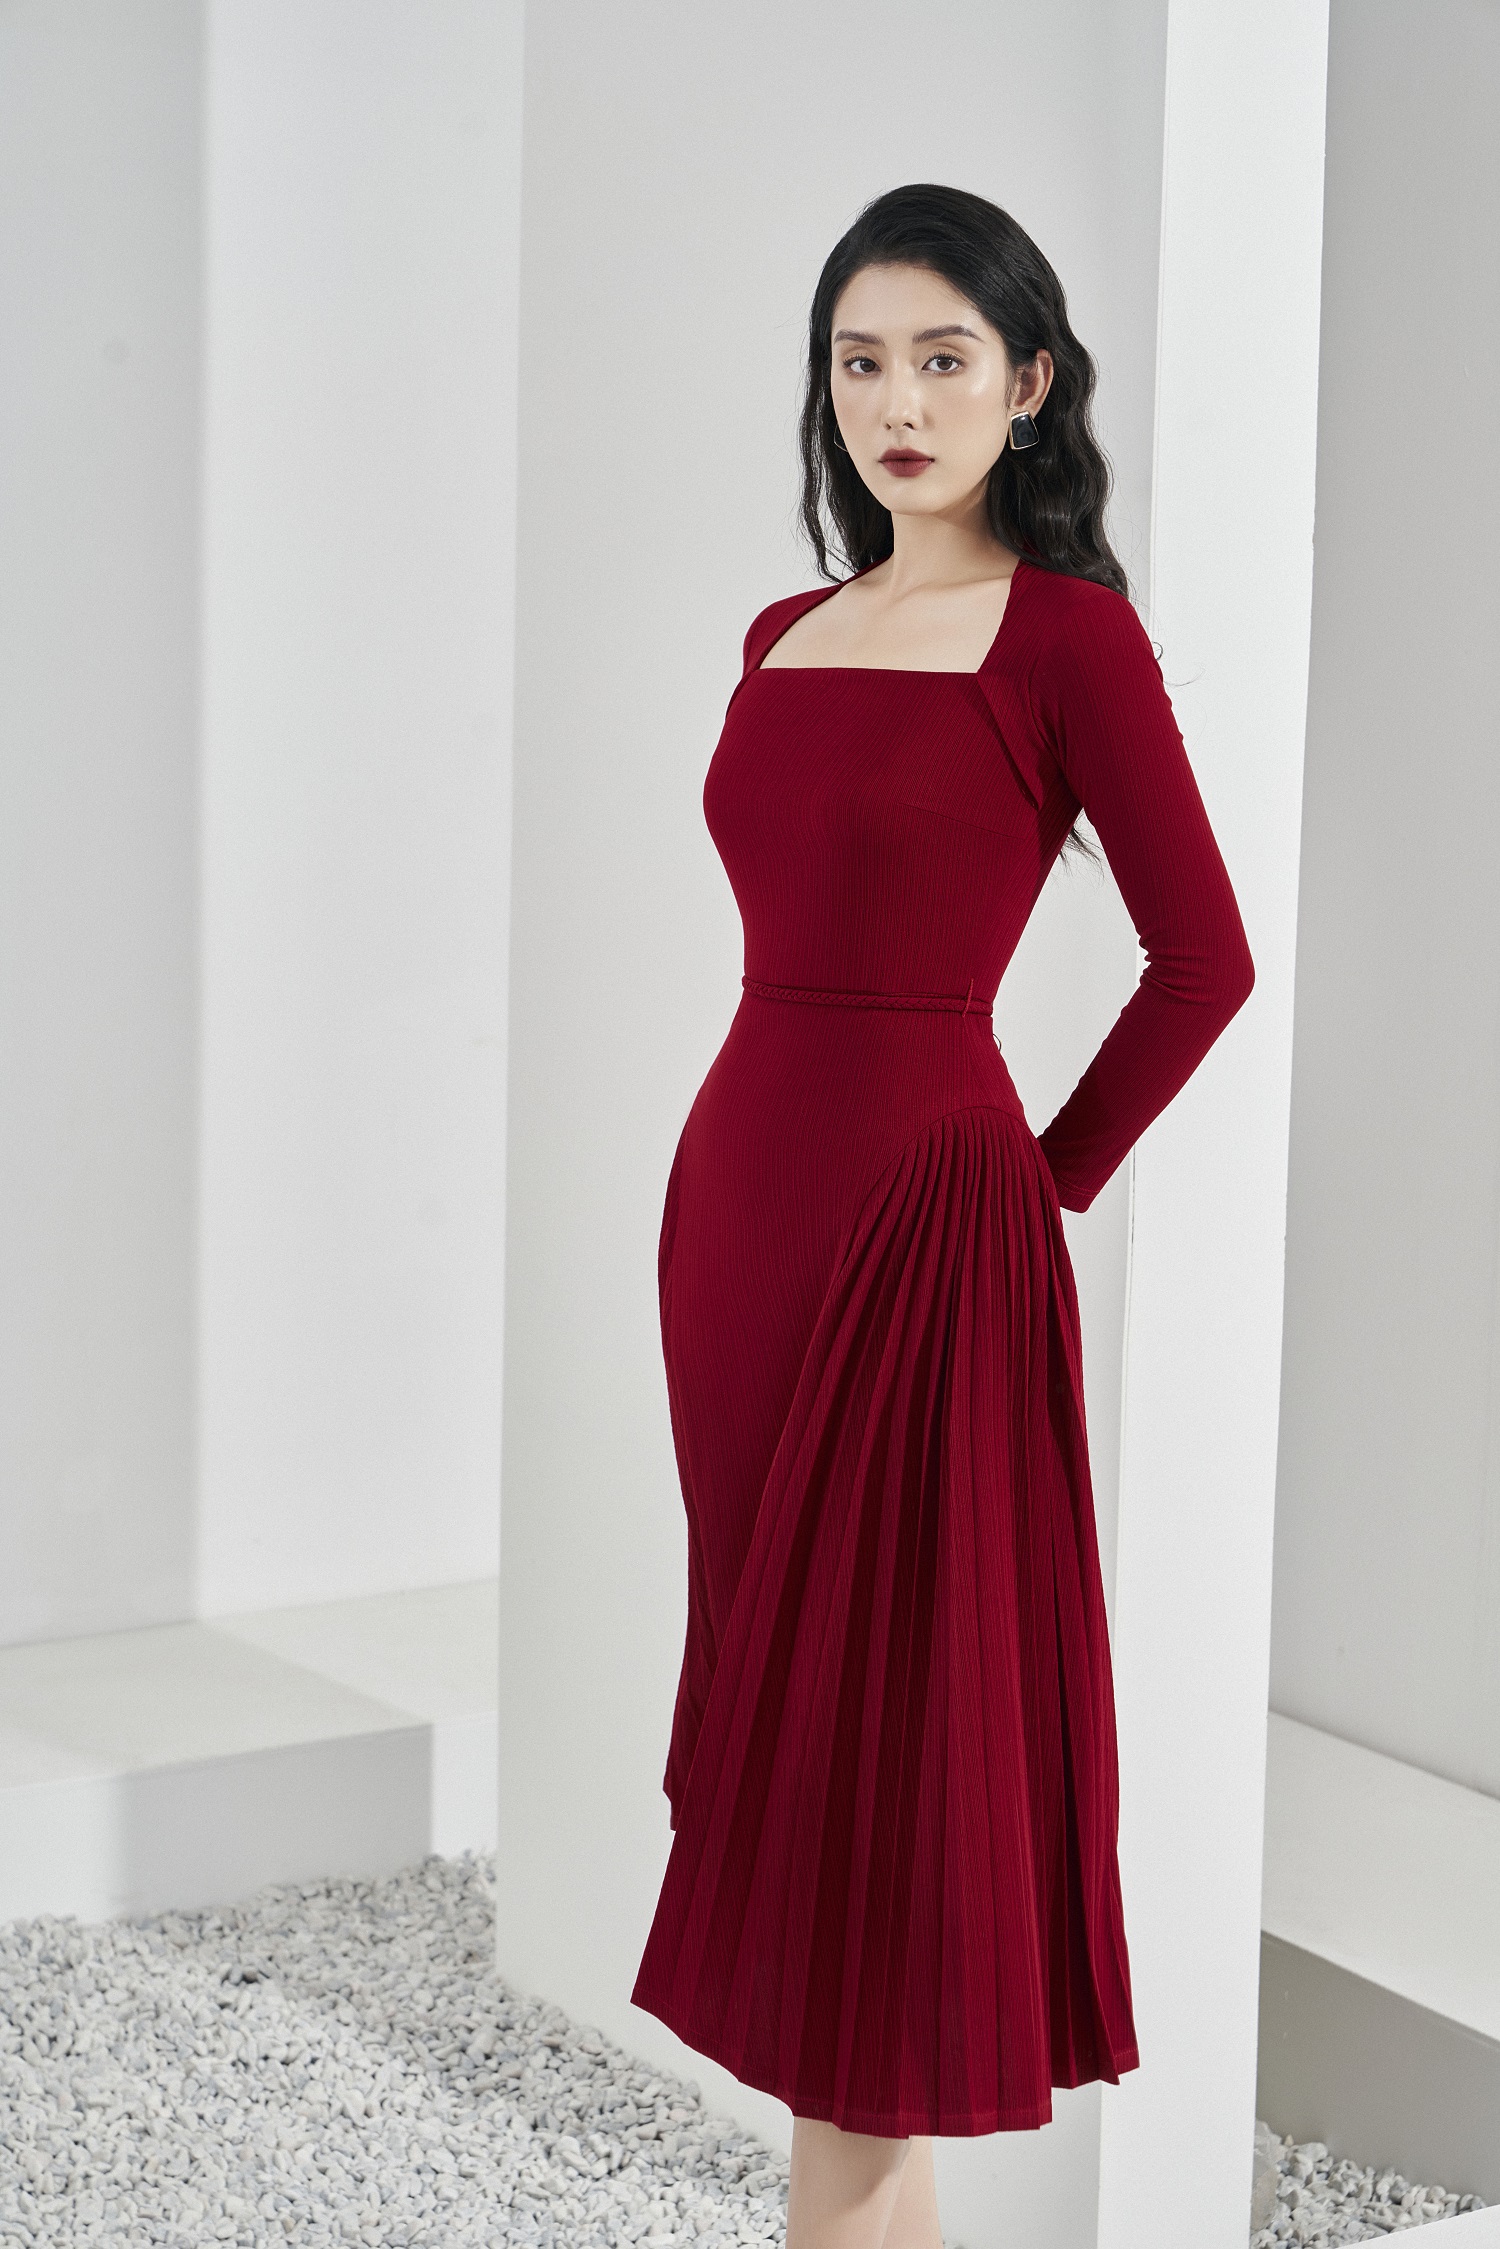 Những bộ váy lên top 1 tìm kiếm ở Hàn vì lạm dụng phô bày cơ thể trên thảm  đỏ